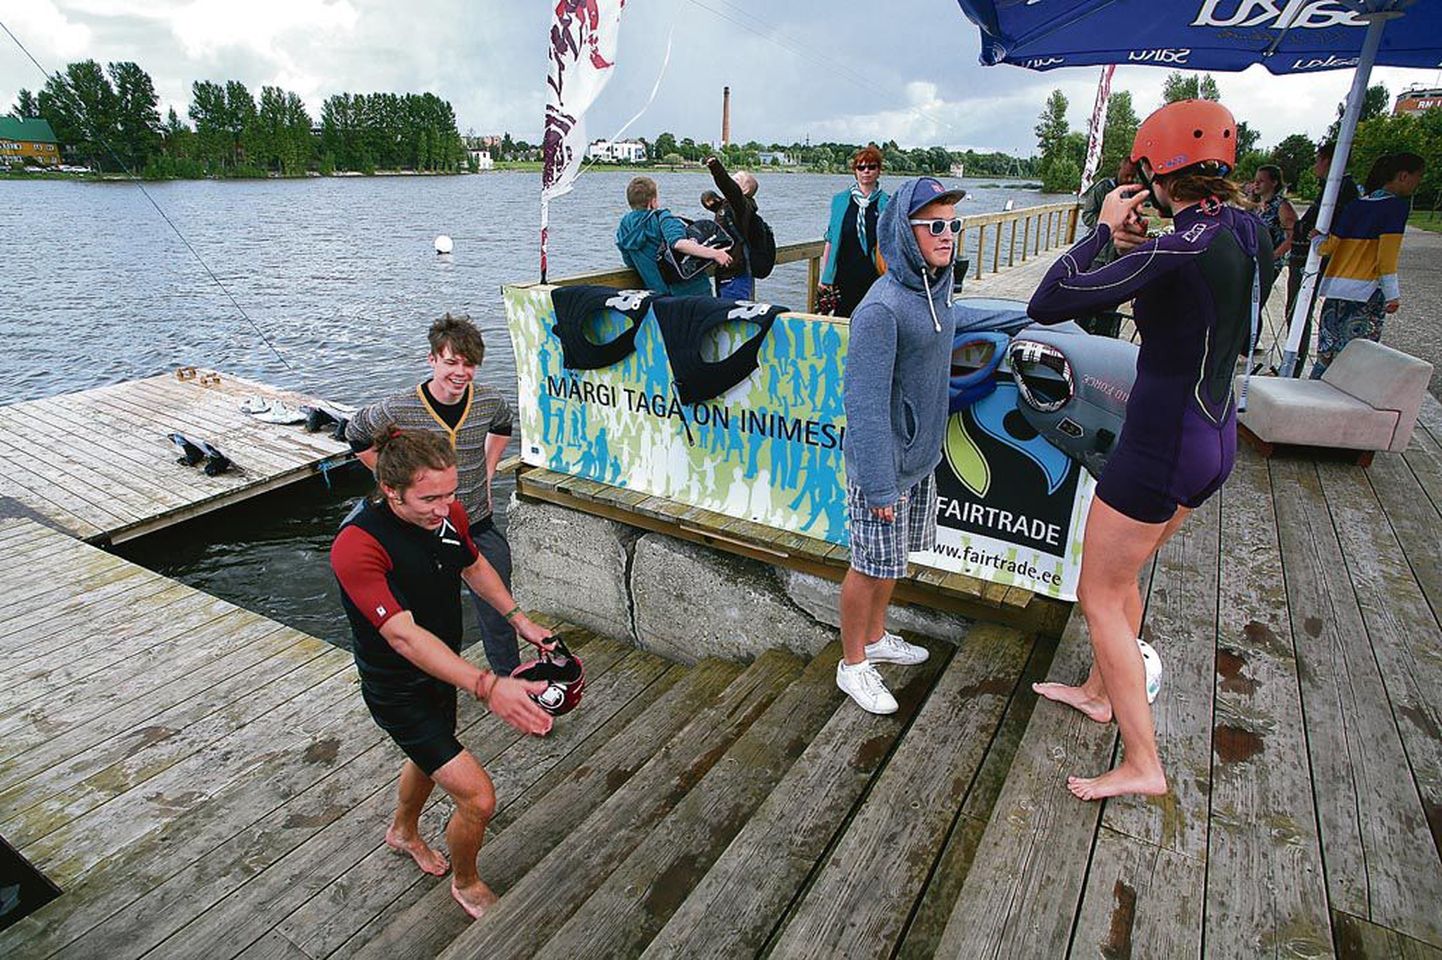 Neljapäeval õppis noortevahetuse rahvusvaheline seltskond Pärnu jõe ääres wakeboard-lauaga sõitmist.